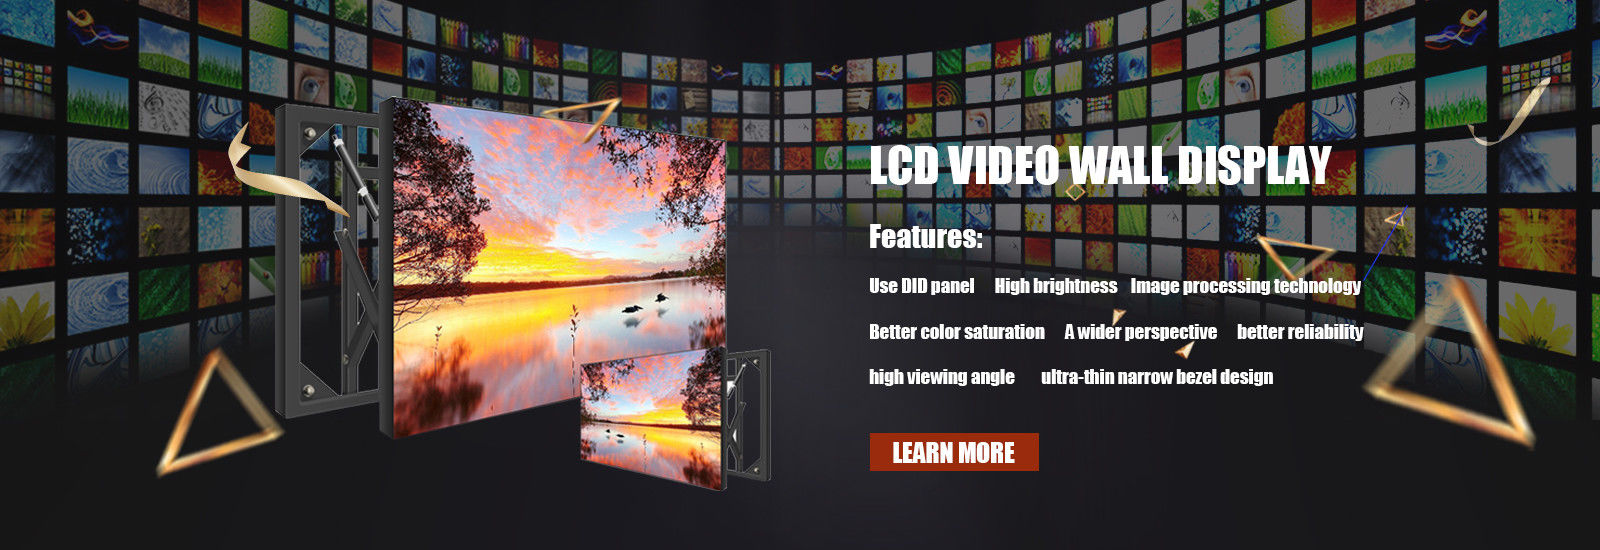 Màn hình LCD Video Wall